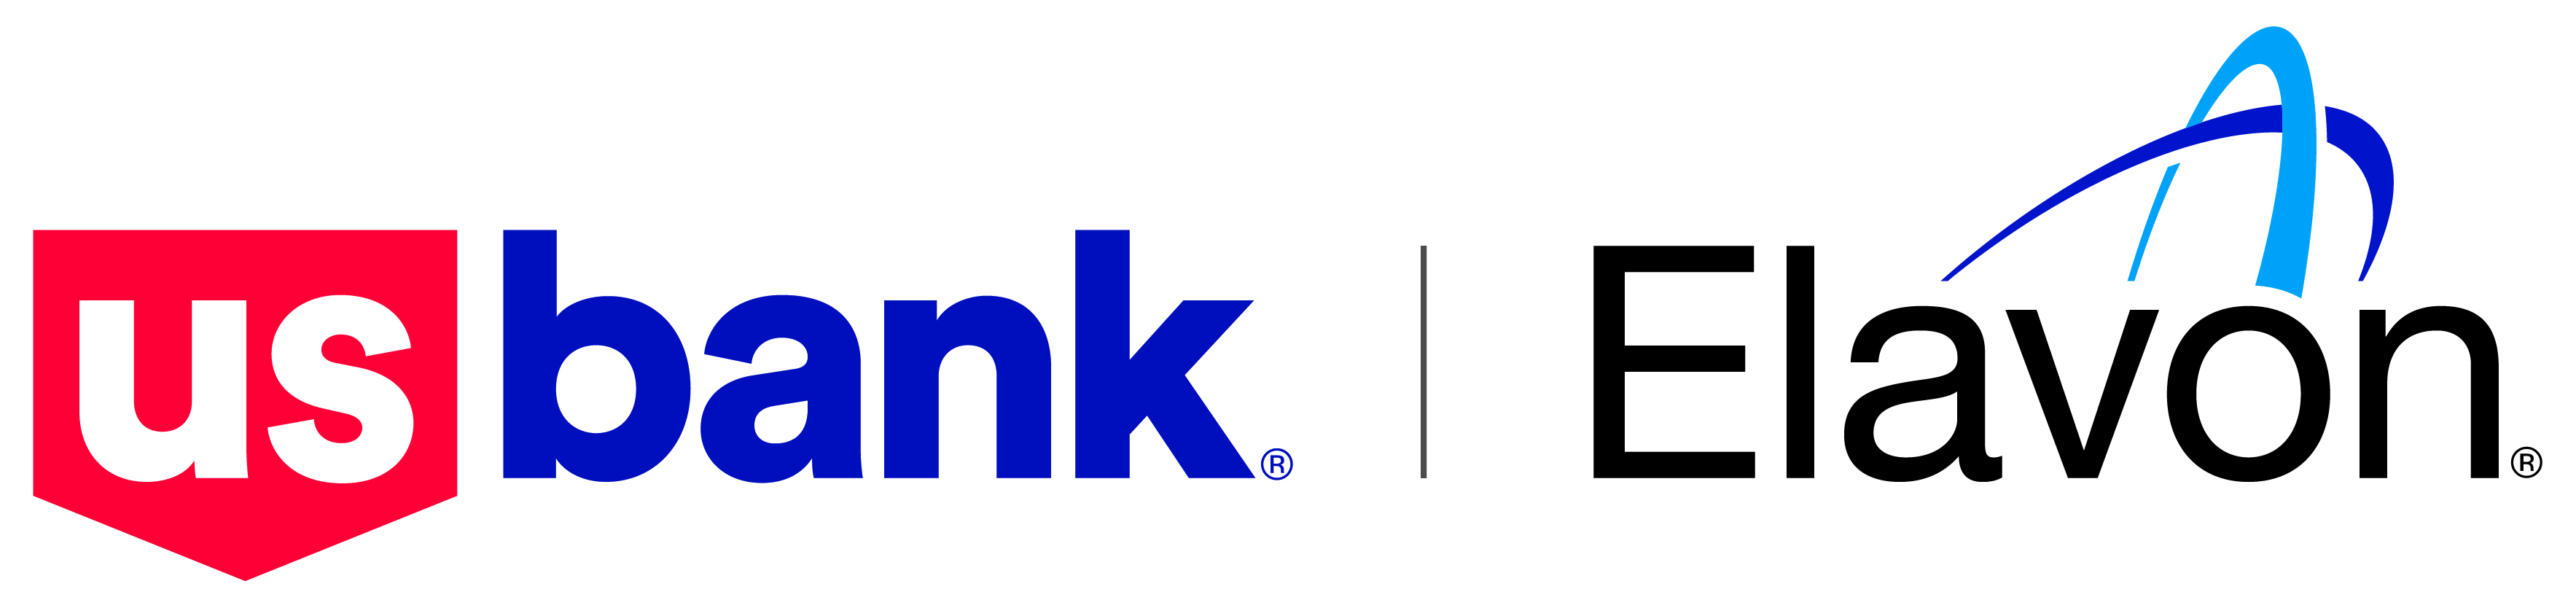 US Bank Elavon logo